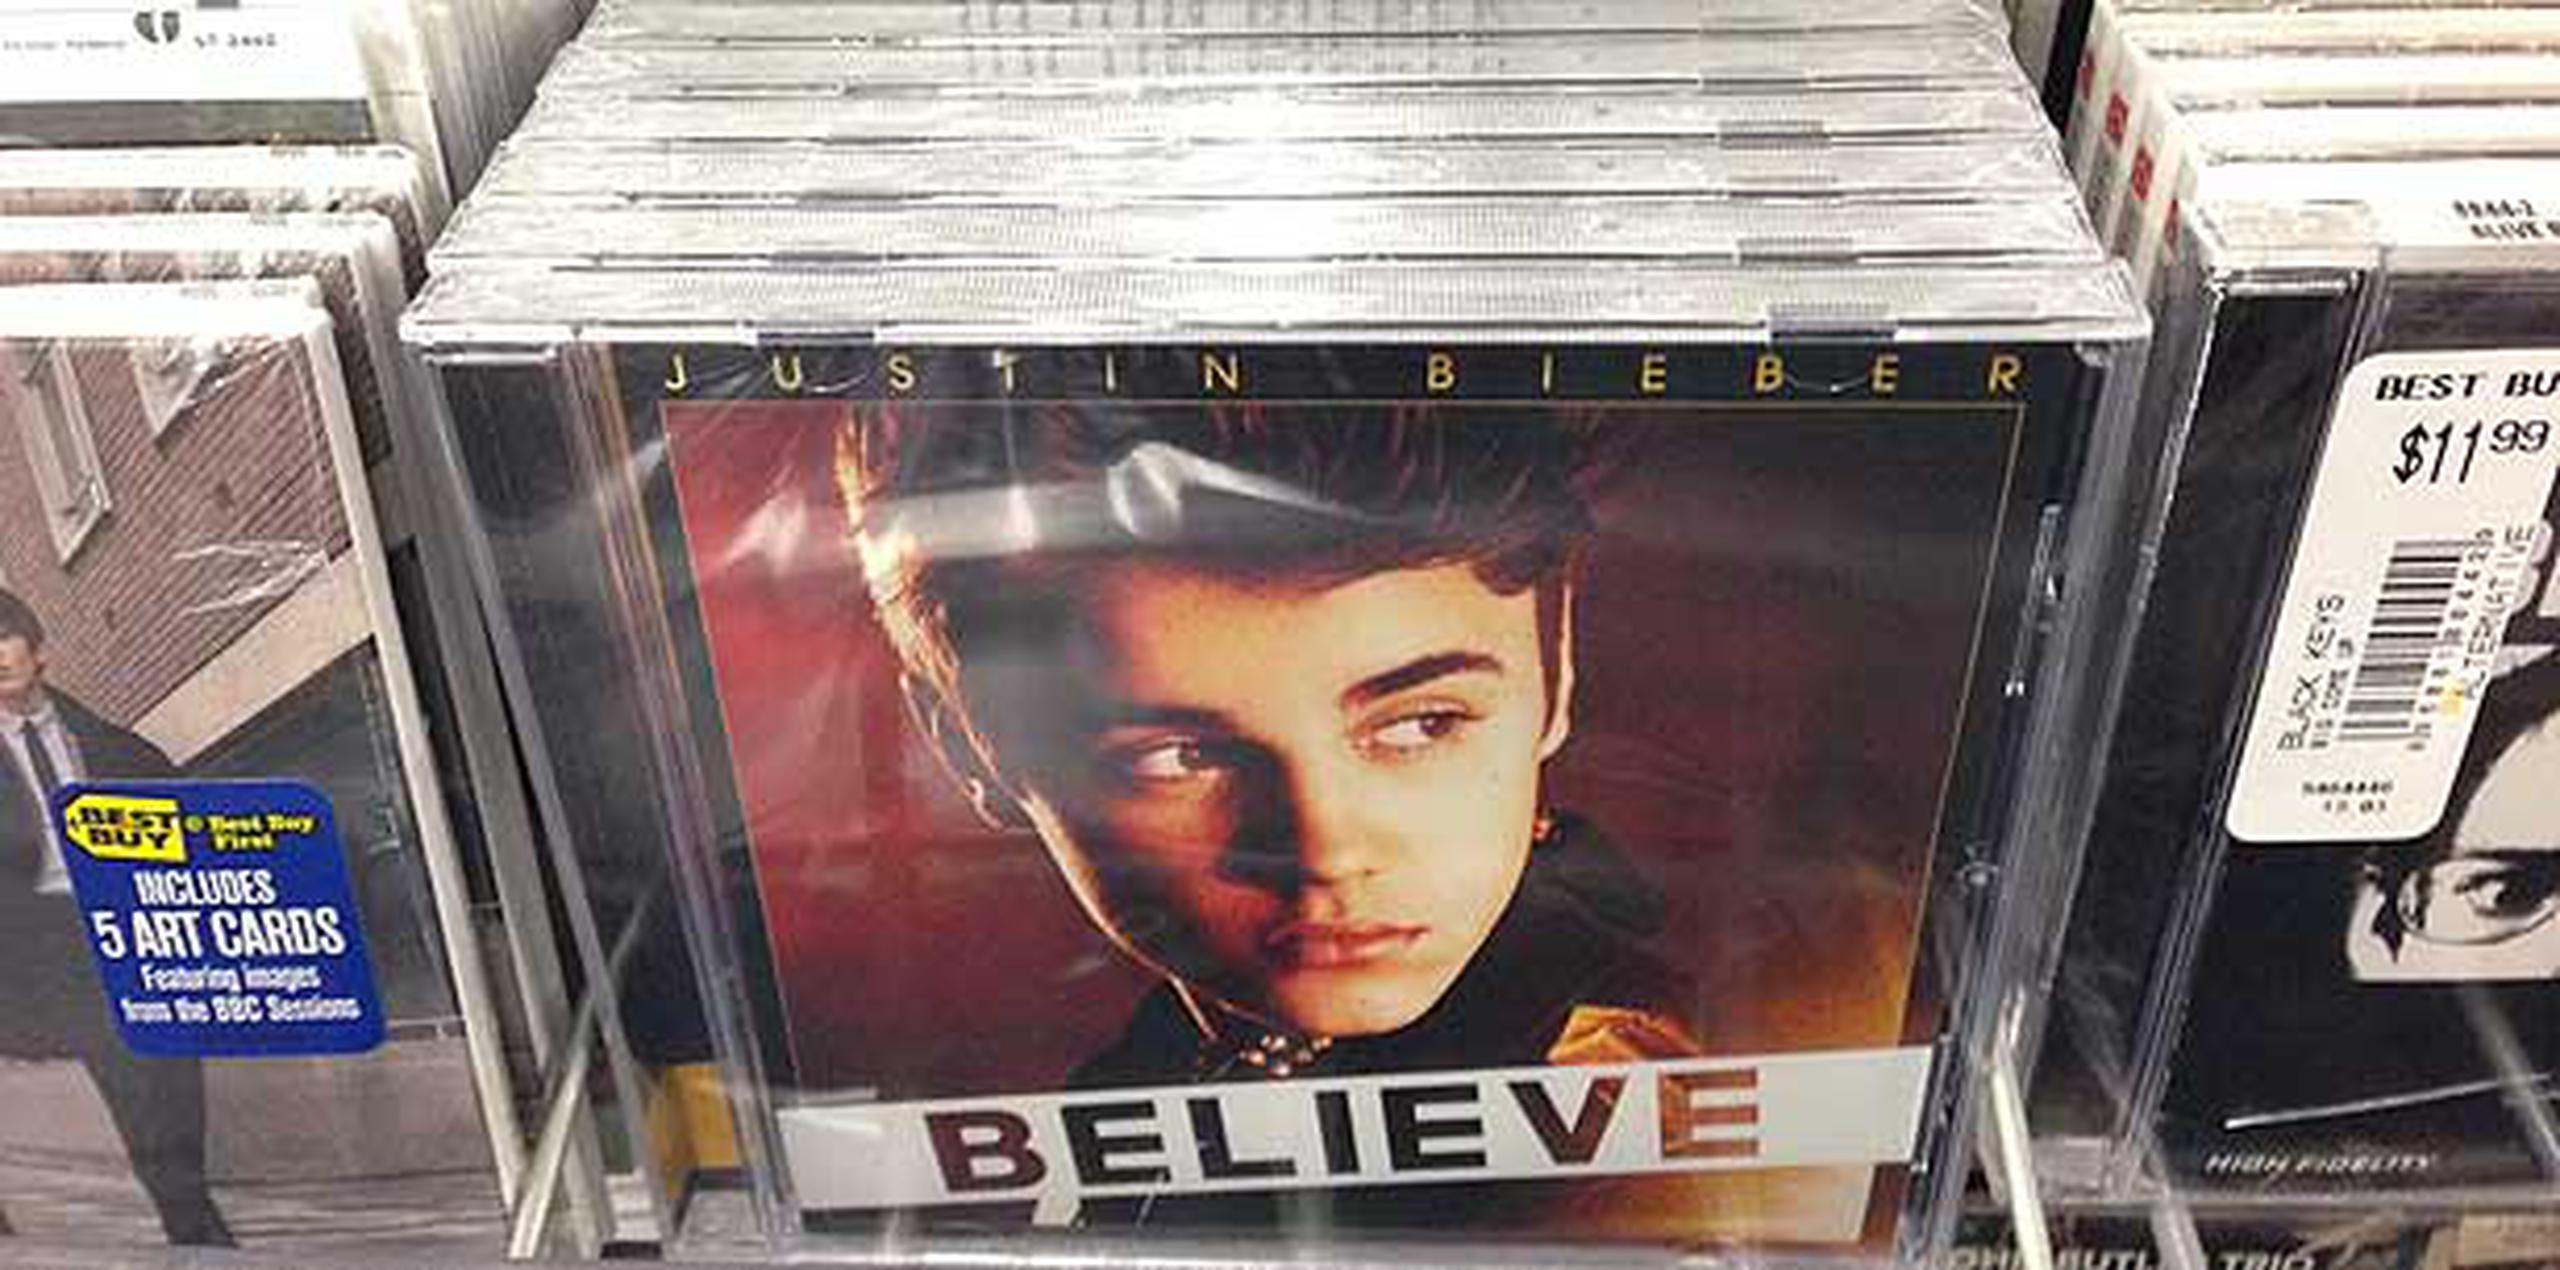 Por fuera, los CDs de Paz Dylan son iguales al disco "Believe" de Justin Bieber. (AP/Derrik J. Lang)